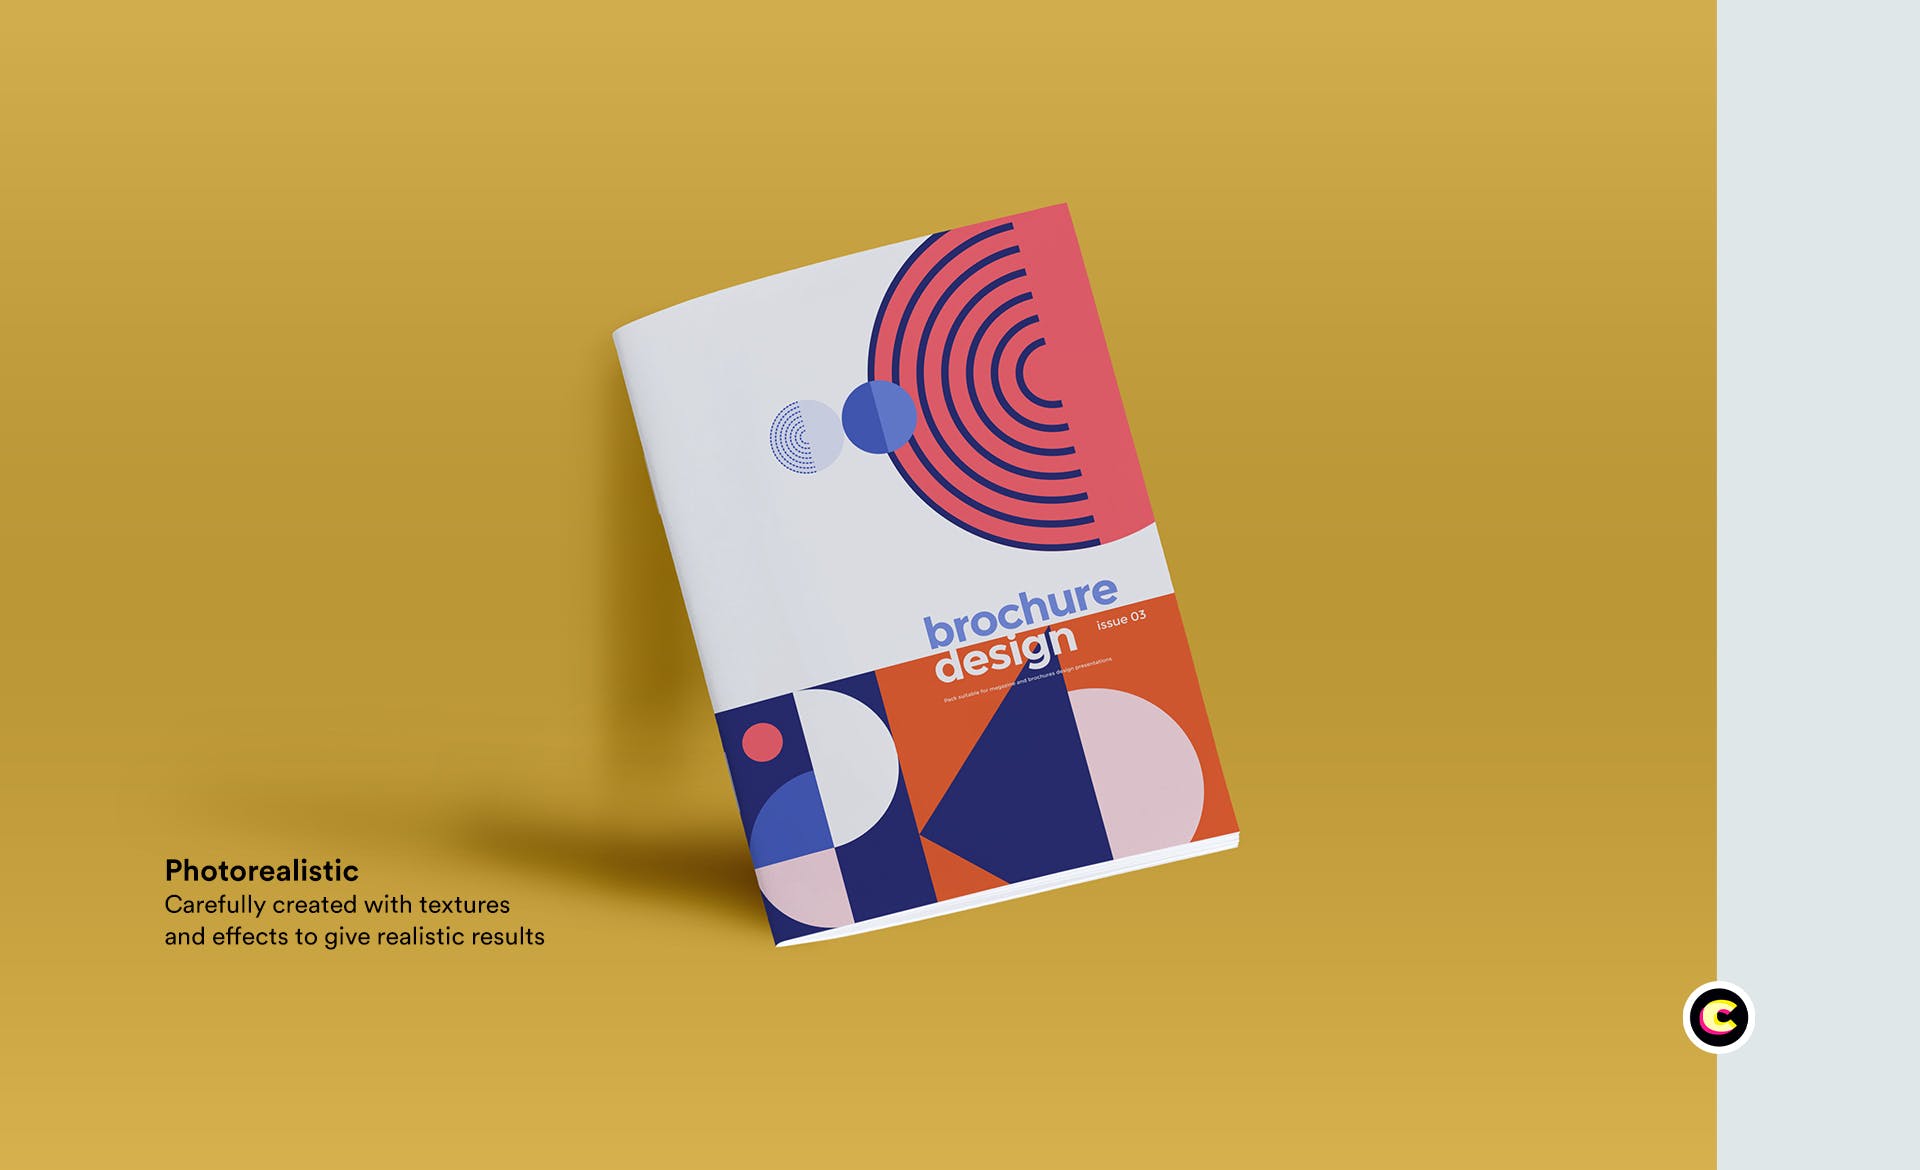 企业品牌画册/宣传册封面设计效果图样机第一素材精选 Brochure Mockup插图(3)